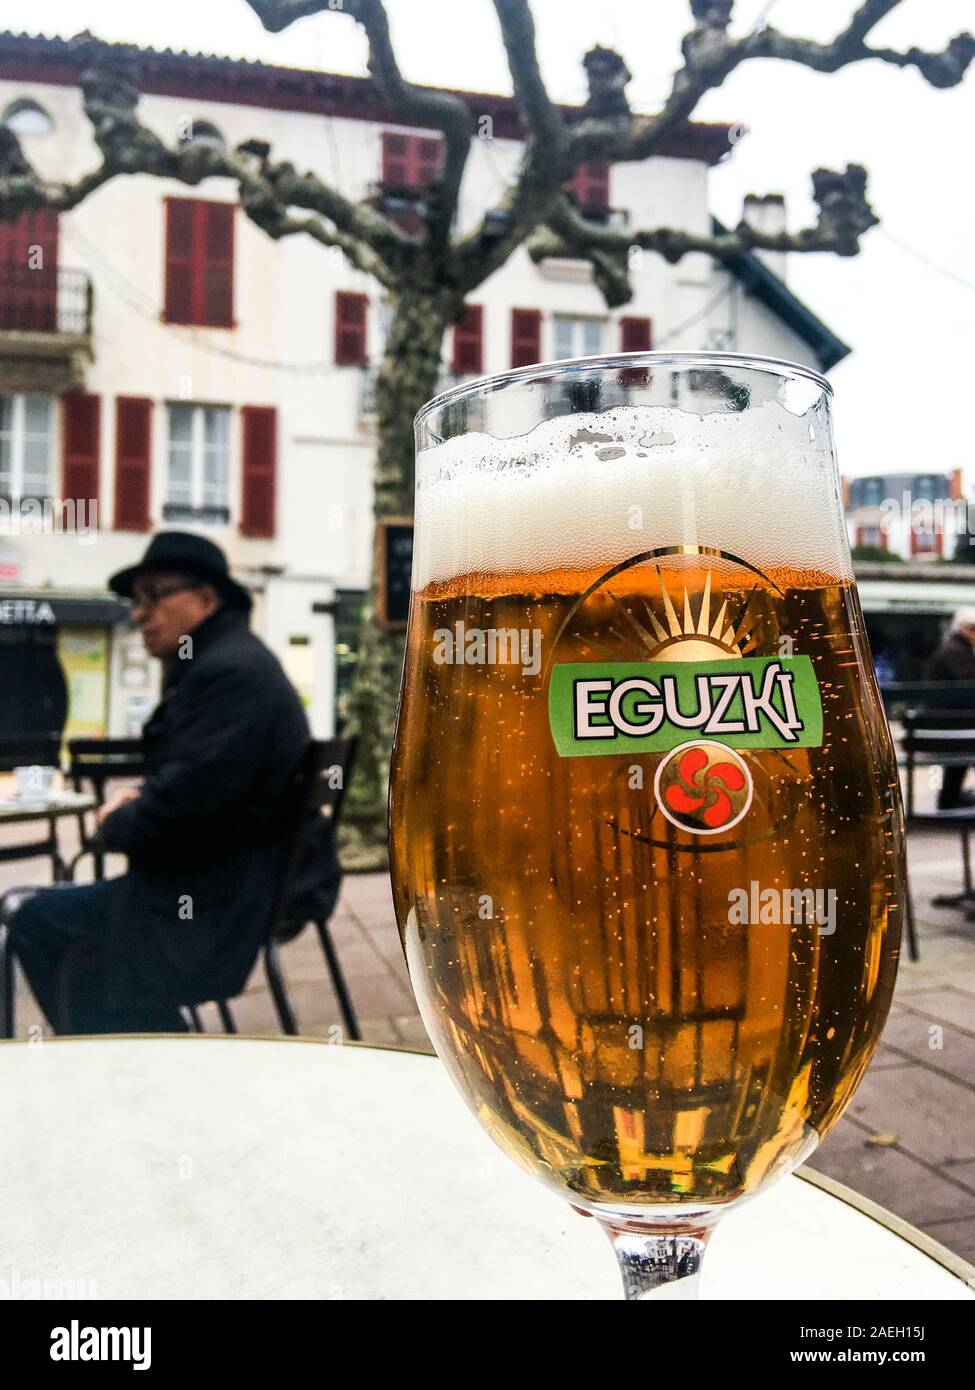 Ein Glas Eguzic baskischen Bier, Saint-Jean-de-Luz, Aquitanien, Frankreich  Stockfotografie - Alamy